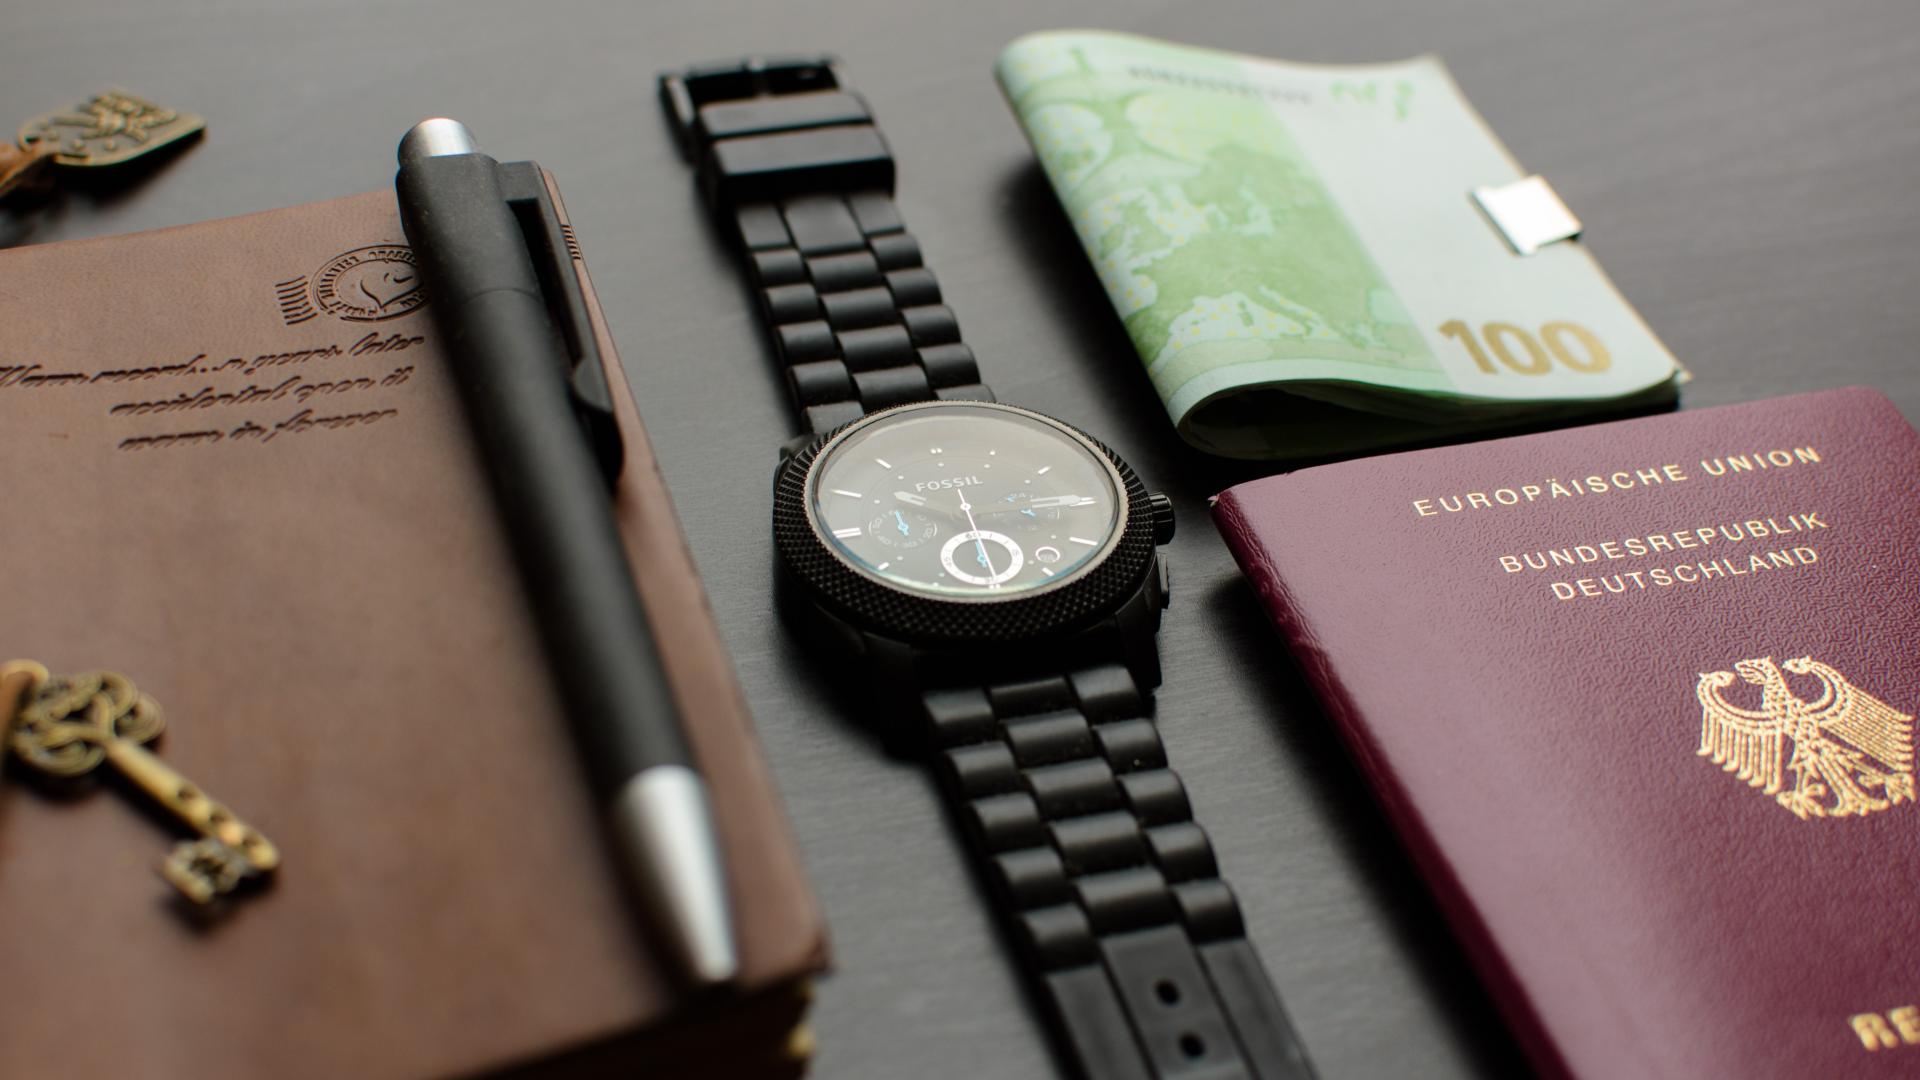 Reisepass, Uhr, Geld und Tagebuch auf einem Tisch